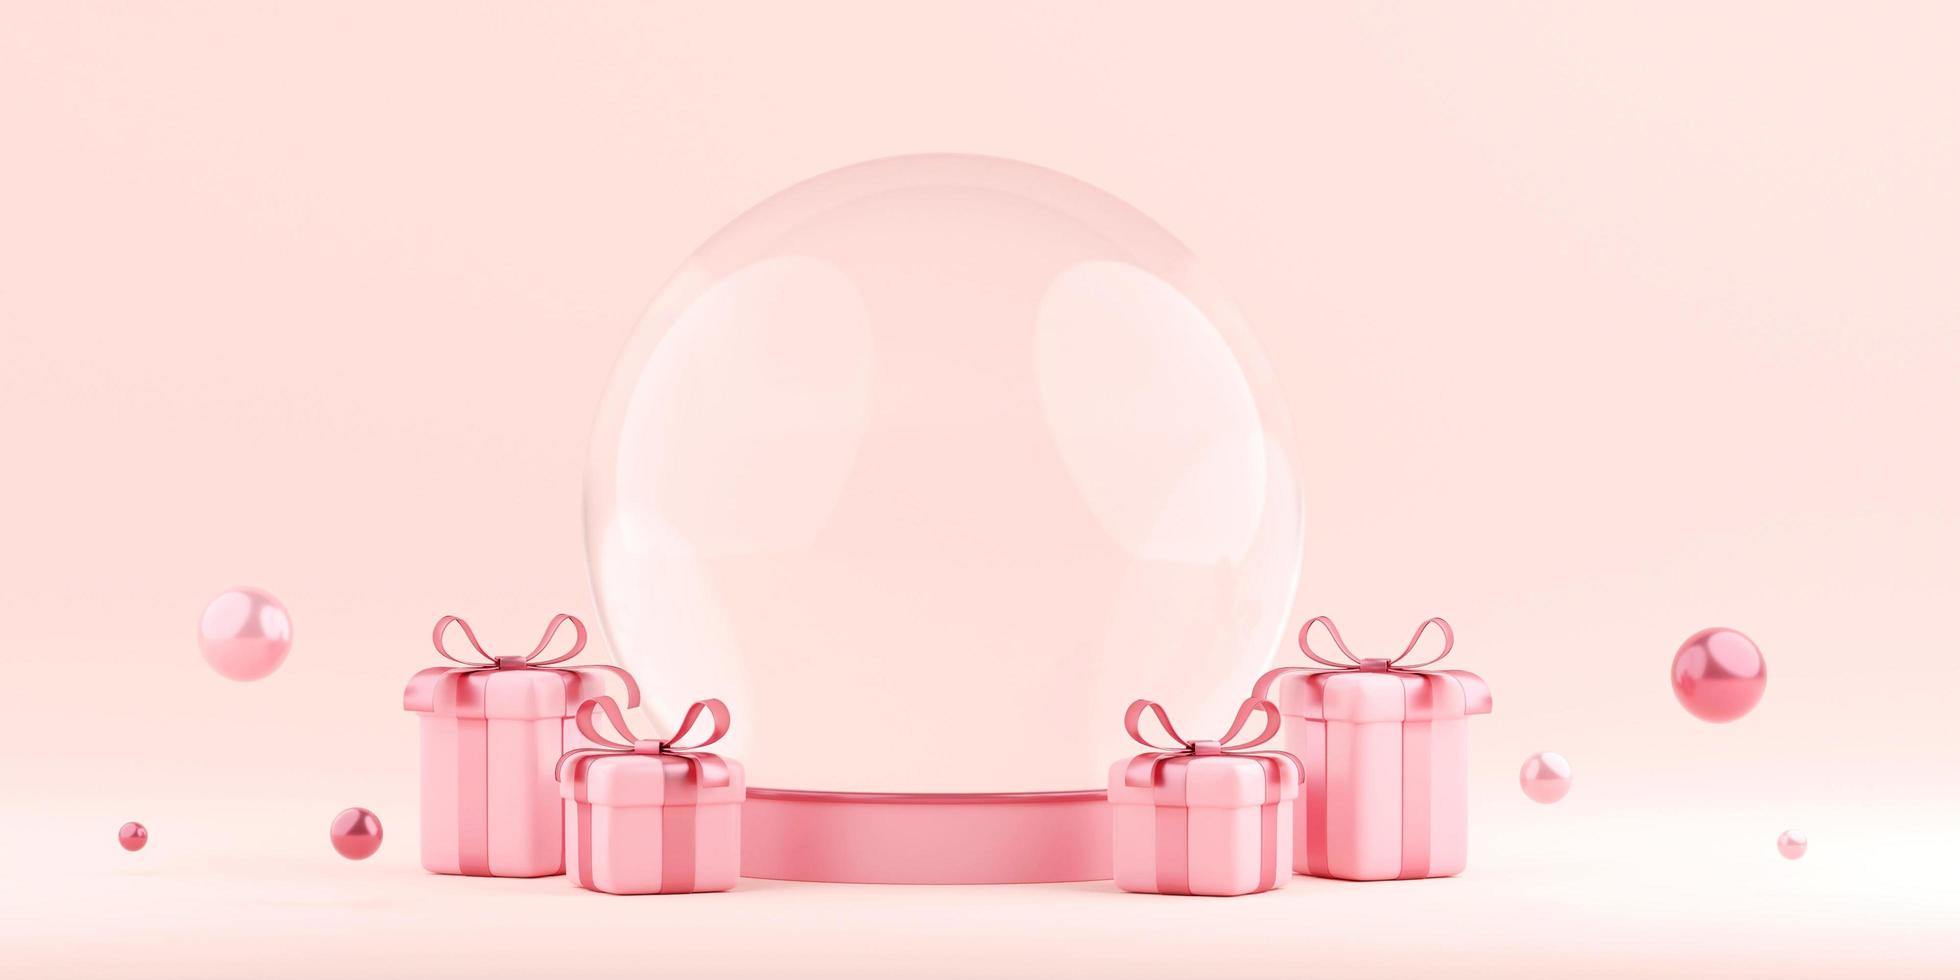 Banner de ilustração 3D do globo de cristal com caixa de presente, feliz dia dos namorados foto